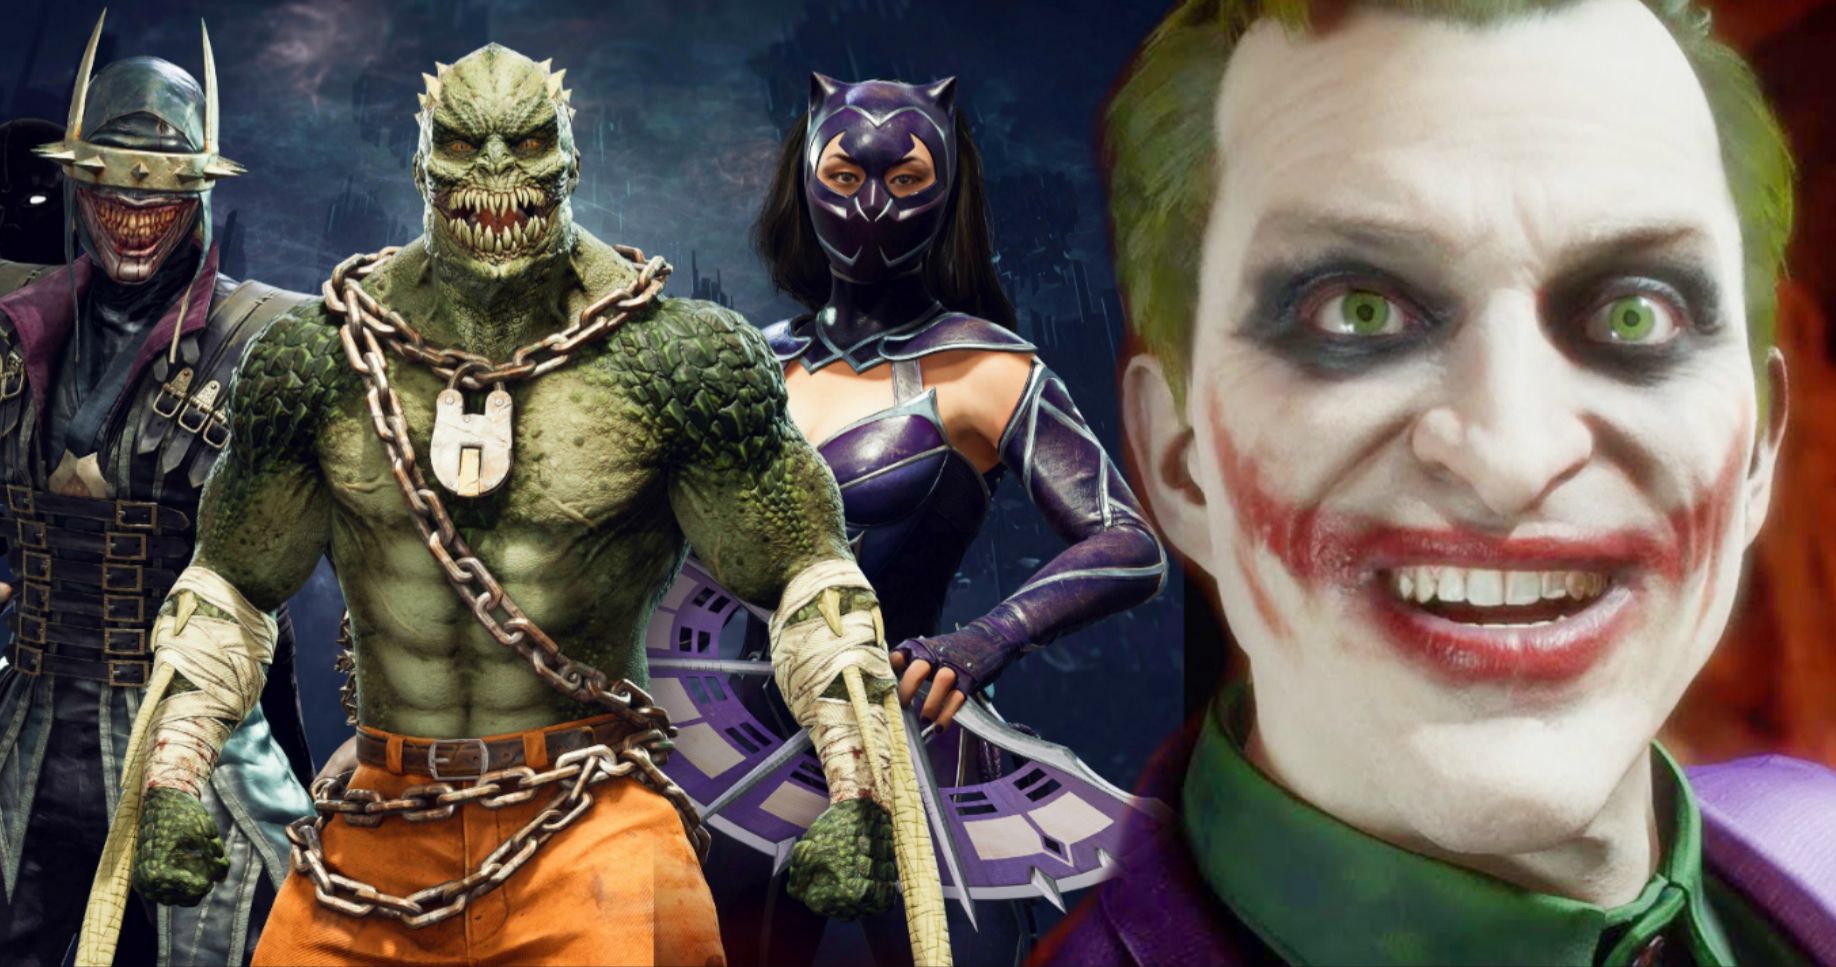 Joker Fights Killer Croc in Gory Mortal Kombat 11 Fatality Trailer